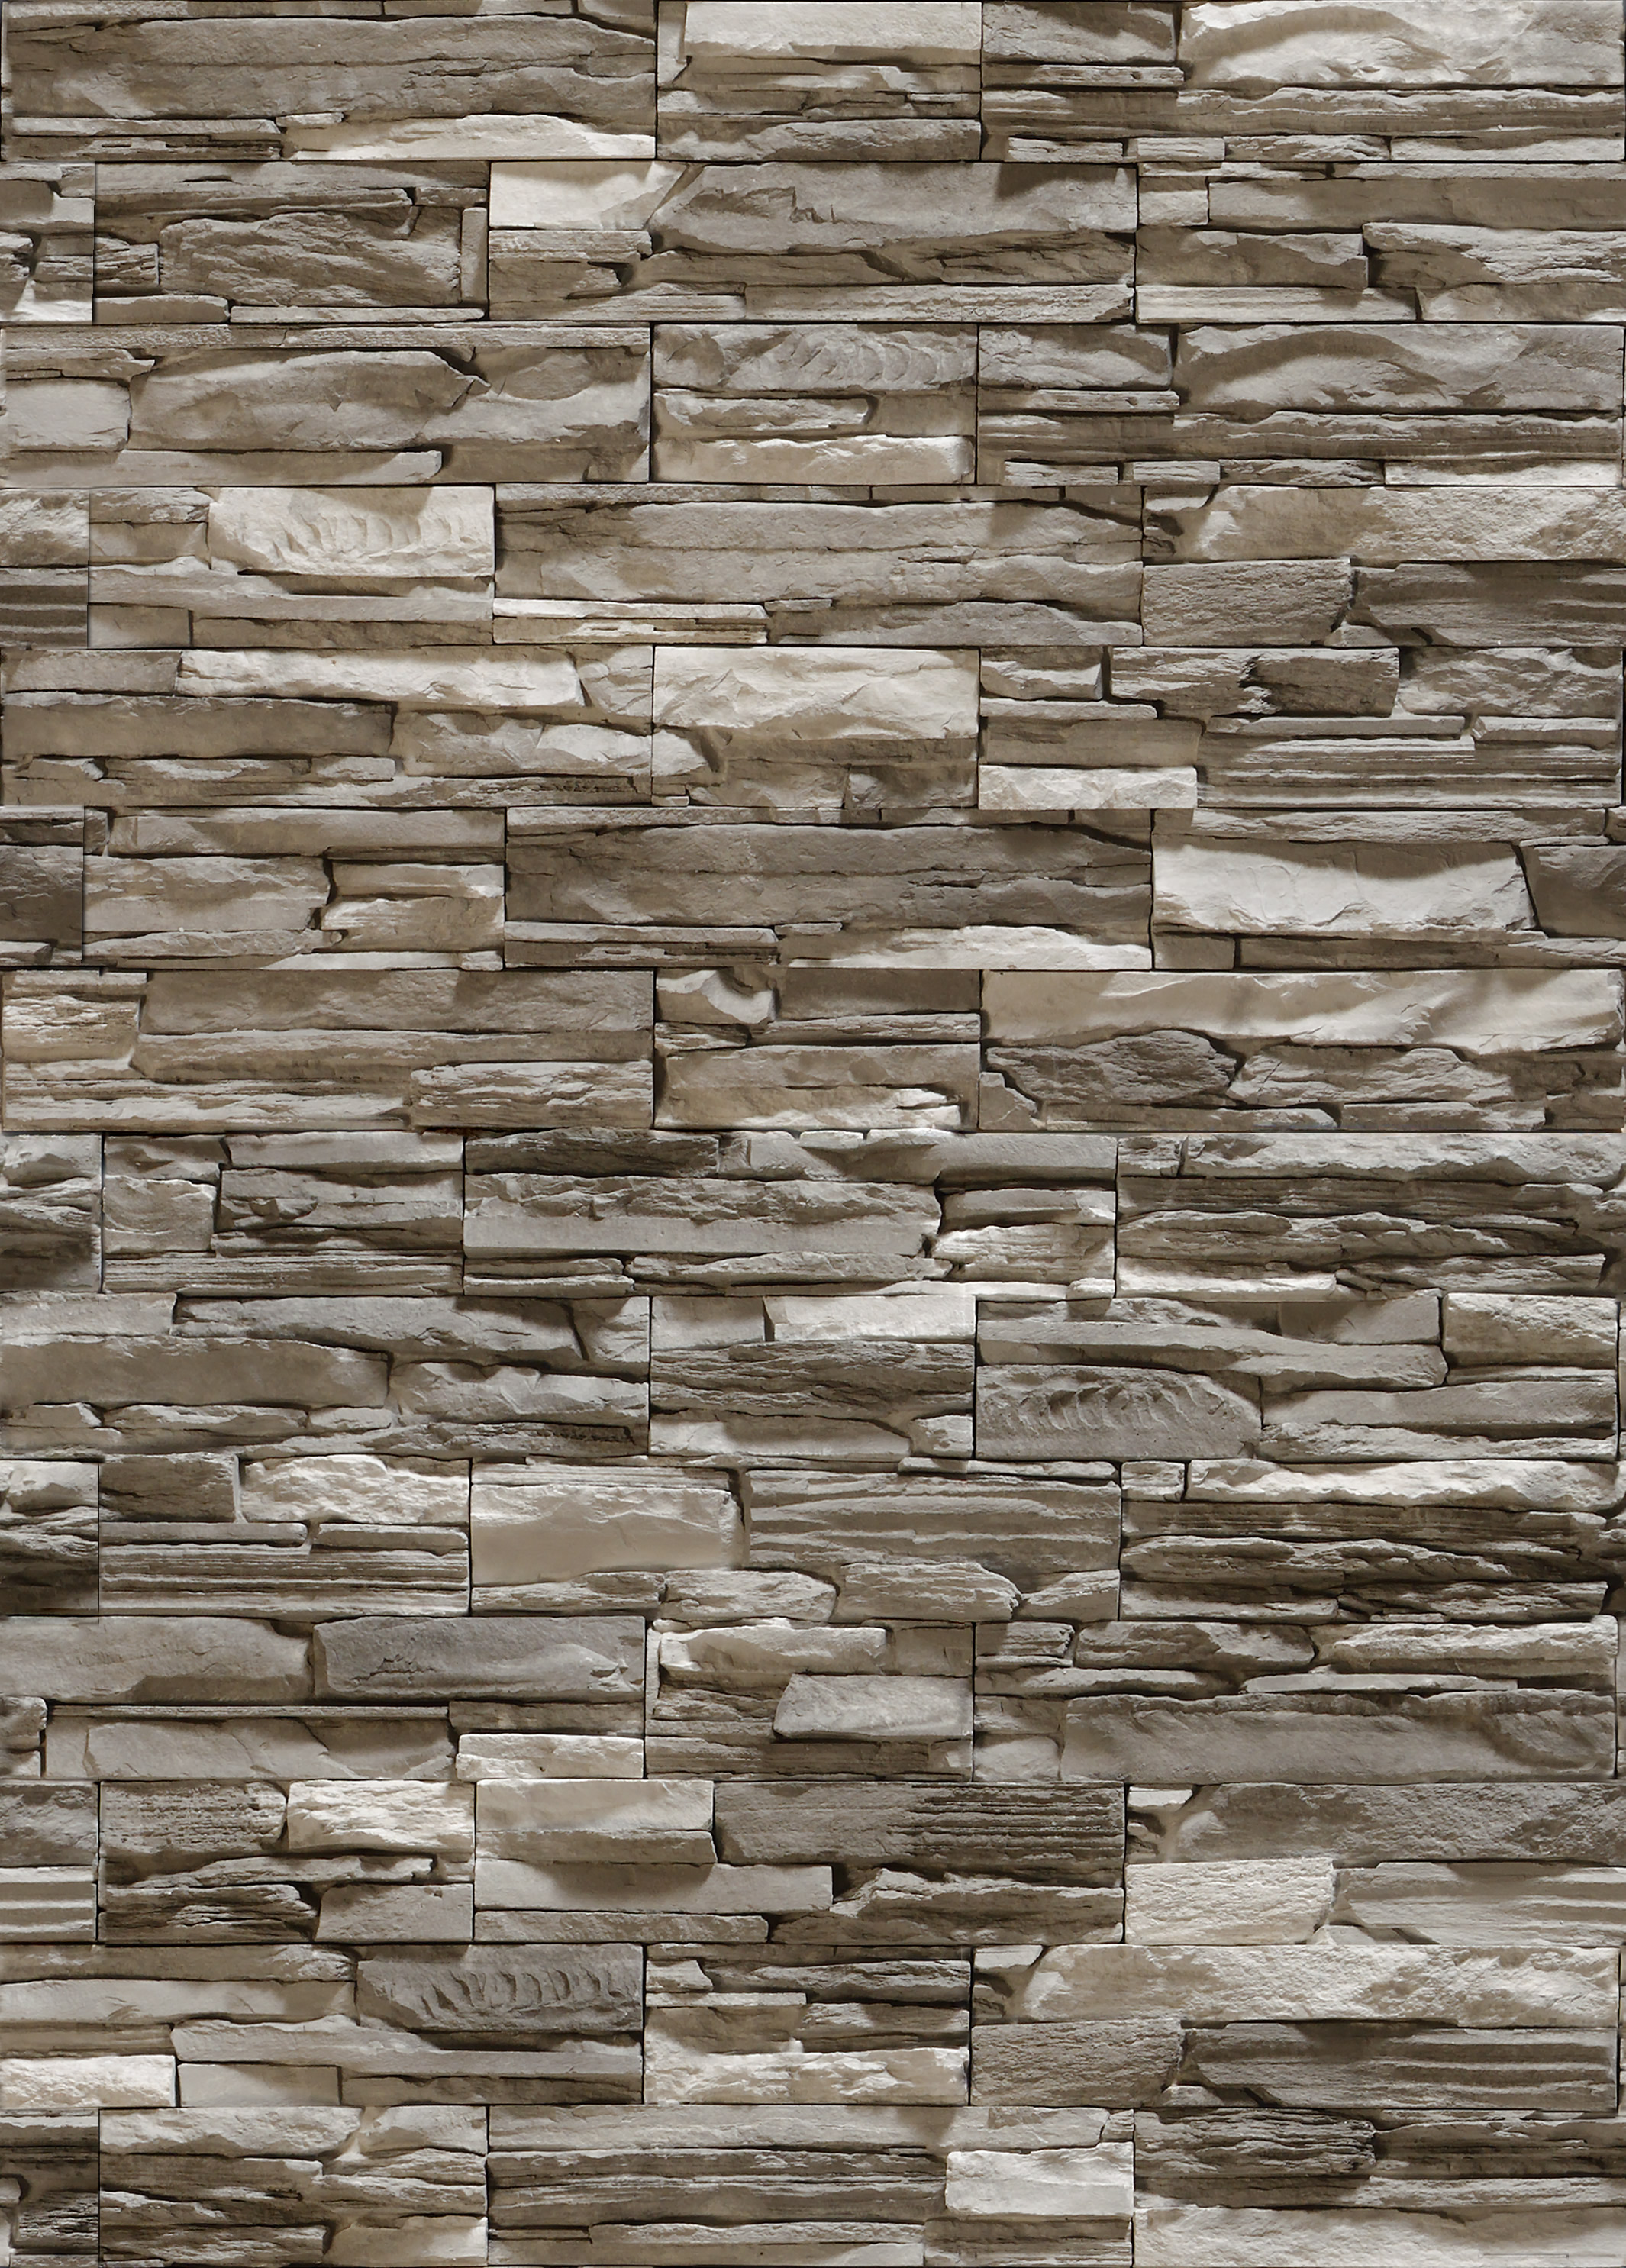 織り目加工の石の壁紙,壁,石垣,れんが,れんが,木材